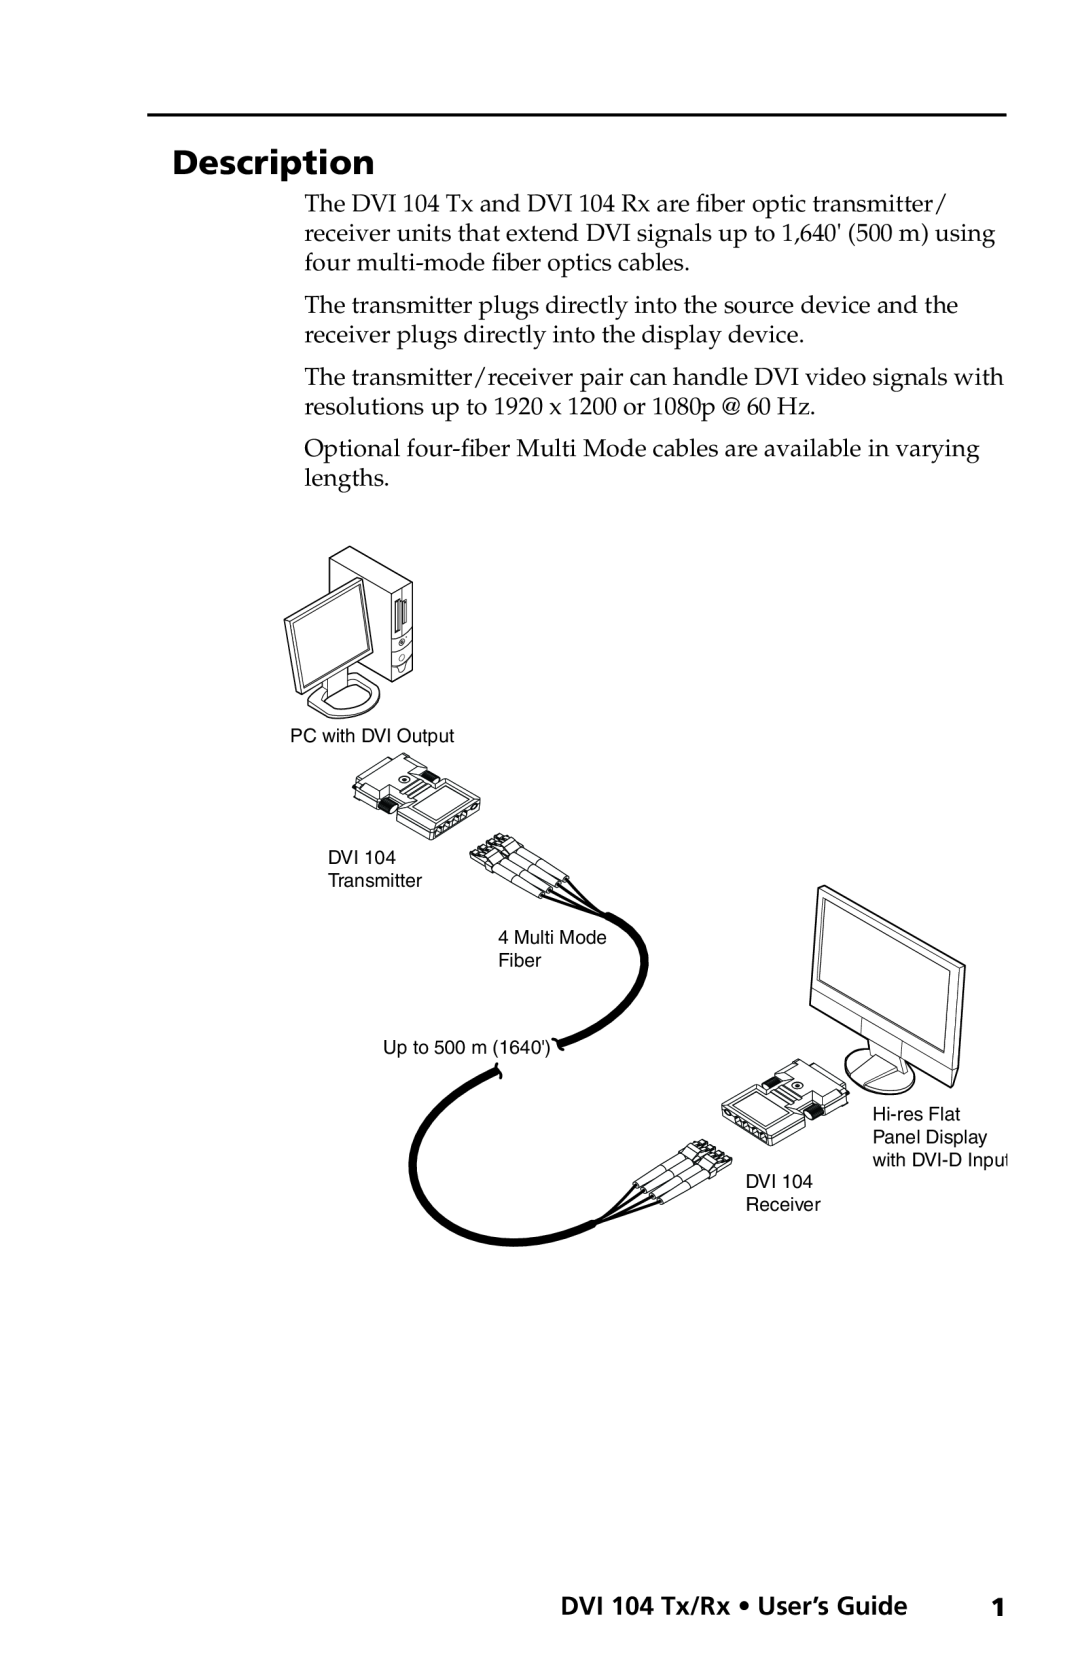 Extron electronic manual Description, DVI 104 Tx/Rx User’s Guide 